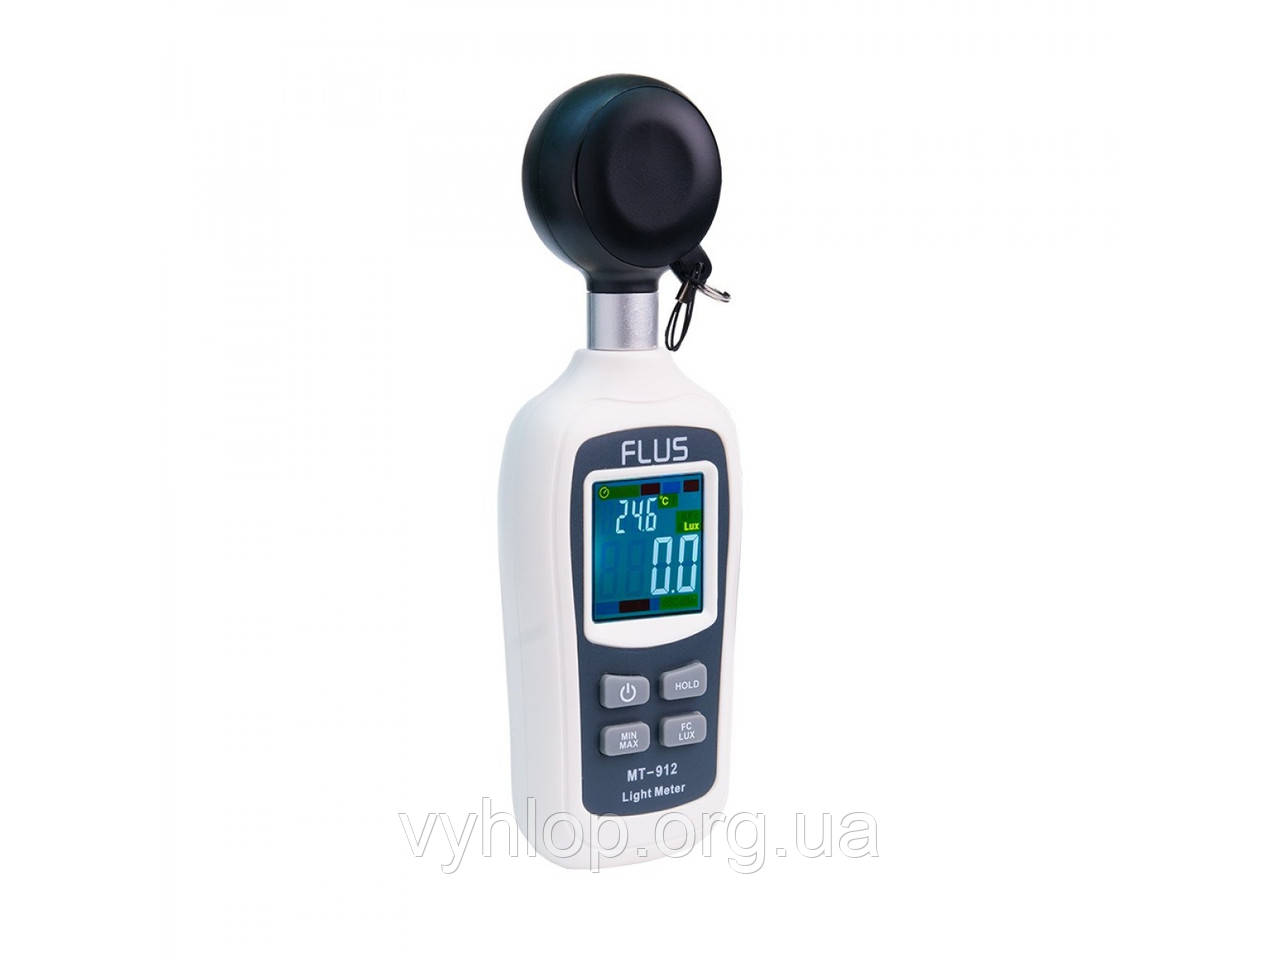 Міні люксметр термометр MT-912 FLUS кольоровим дисплеєм